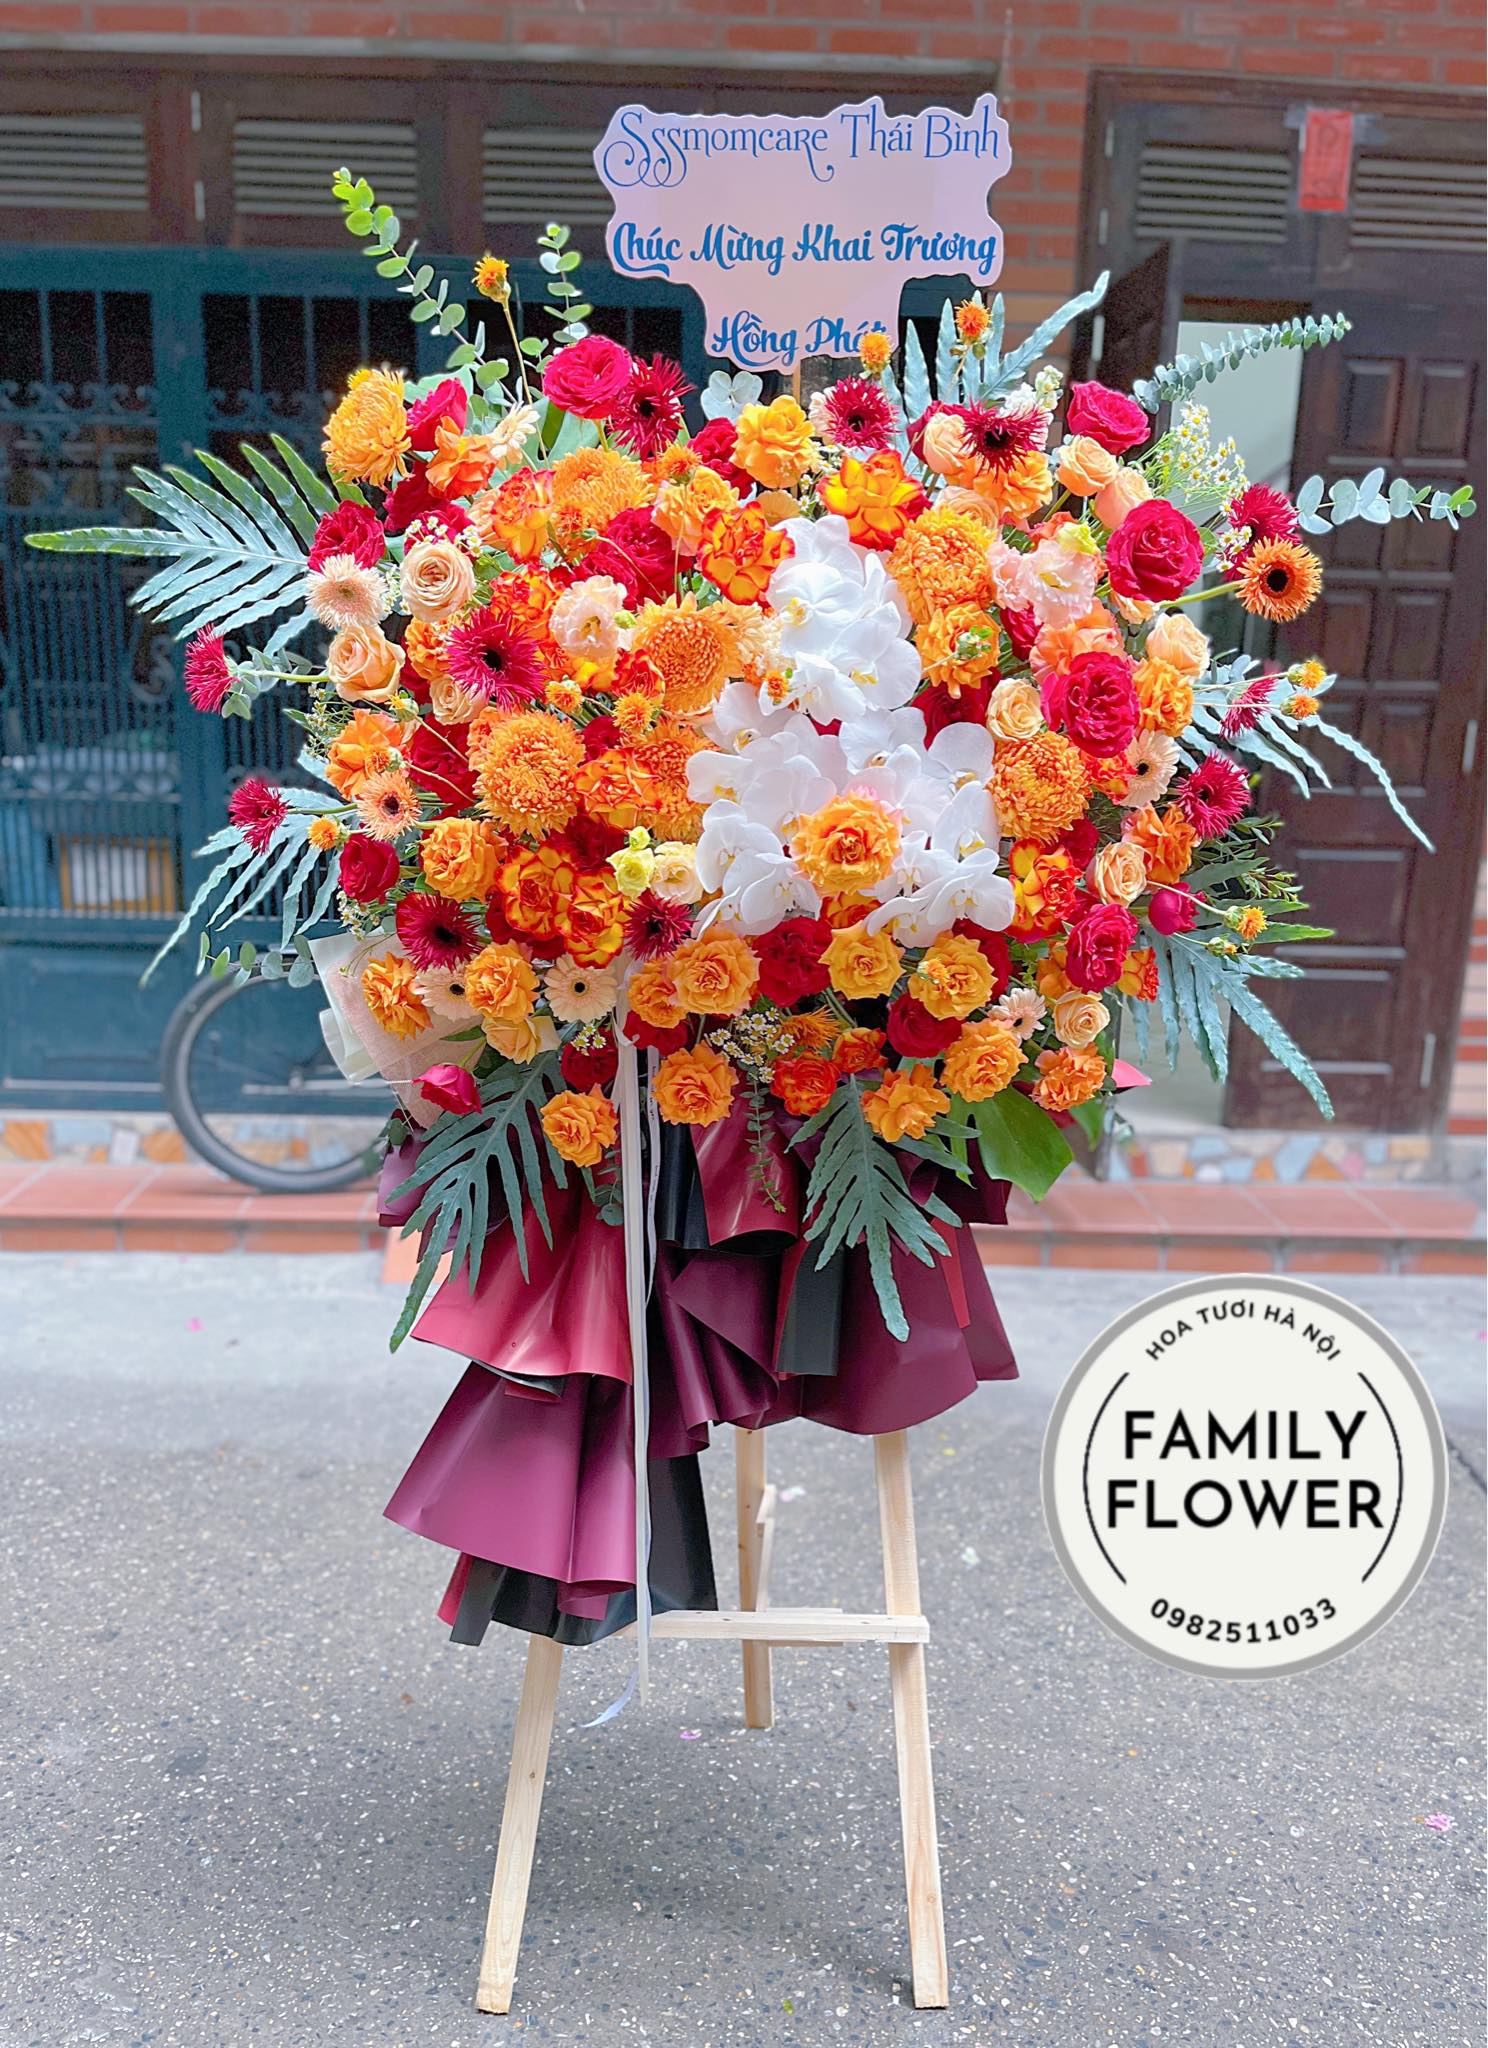 Kệ hoa chúc mừng khai trương tone cam đỏ tại Cầu giấy - Ba đình Hà Nội ! Mua hoa tươi online tại Hà Nội